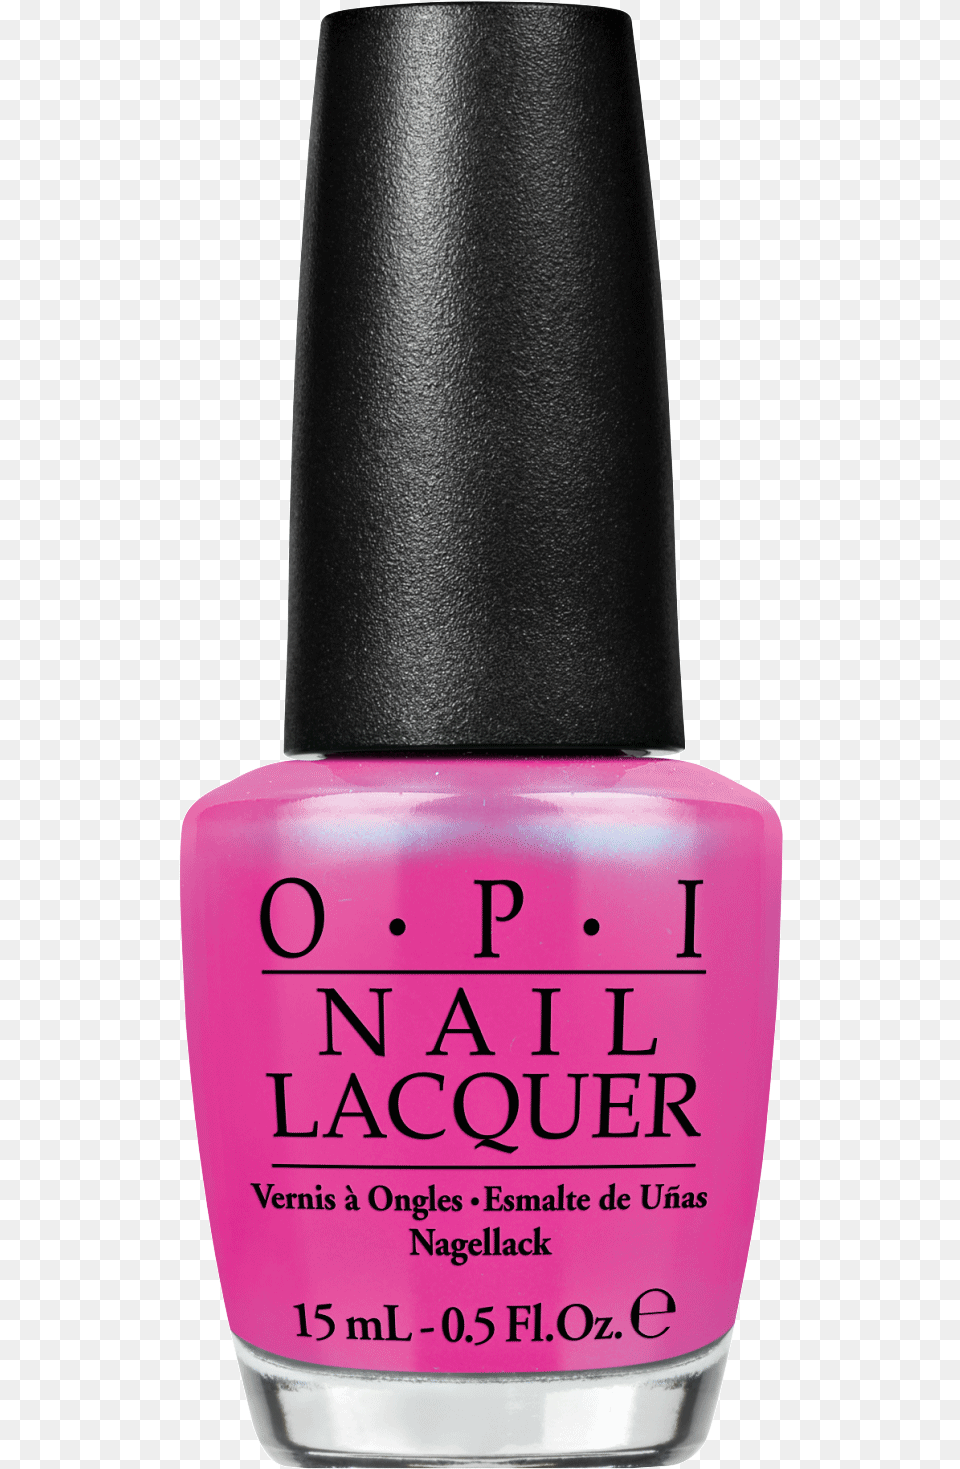 Hot Pink Nail Polish Opi, Cosmetics, Bottle, Perfume, Nail Polish Free Png Download